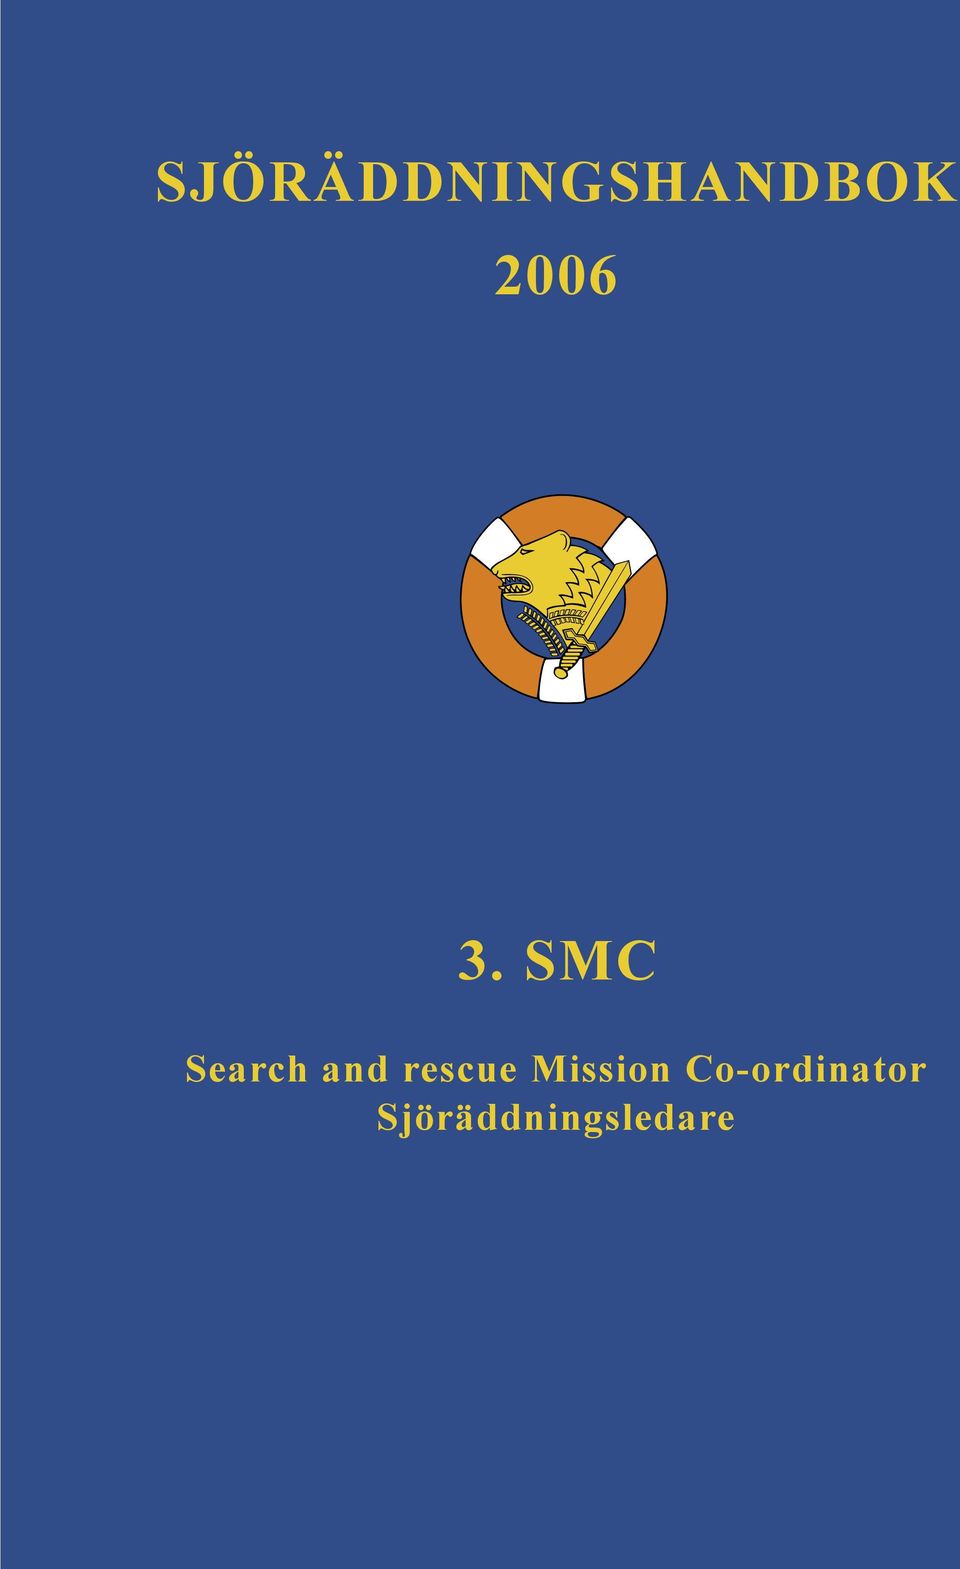 SMC Search and rescue